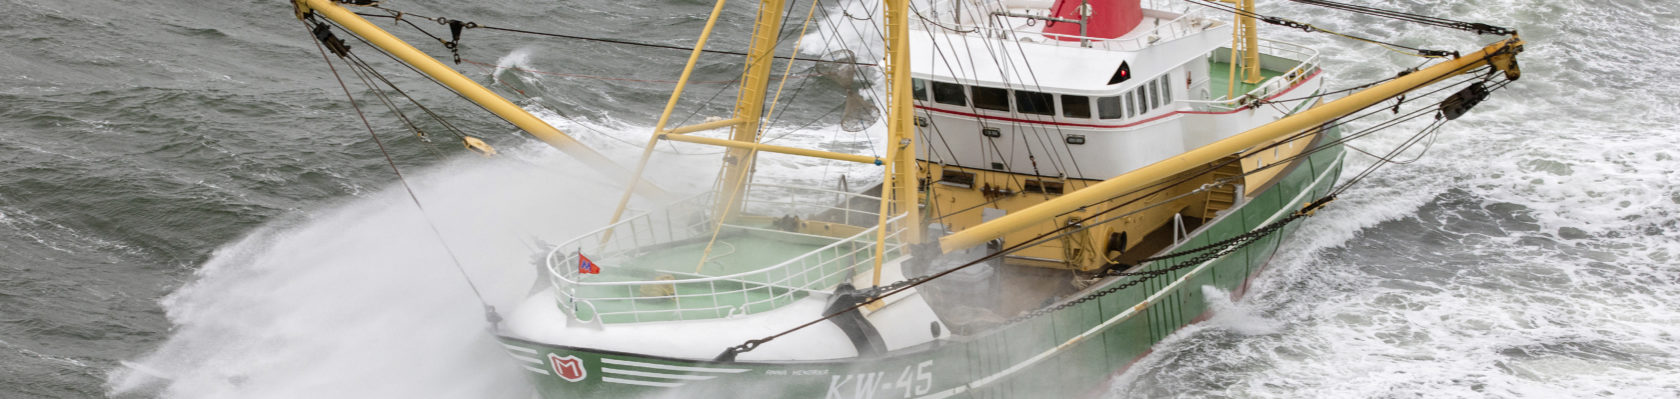 KW45 - Visserij - Noordzeeakkoord golven